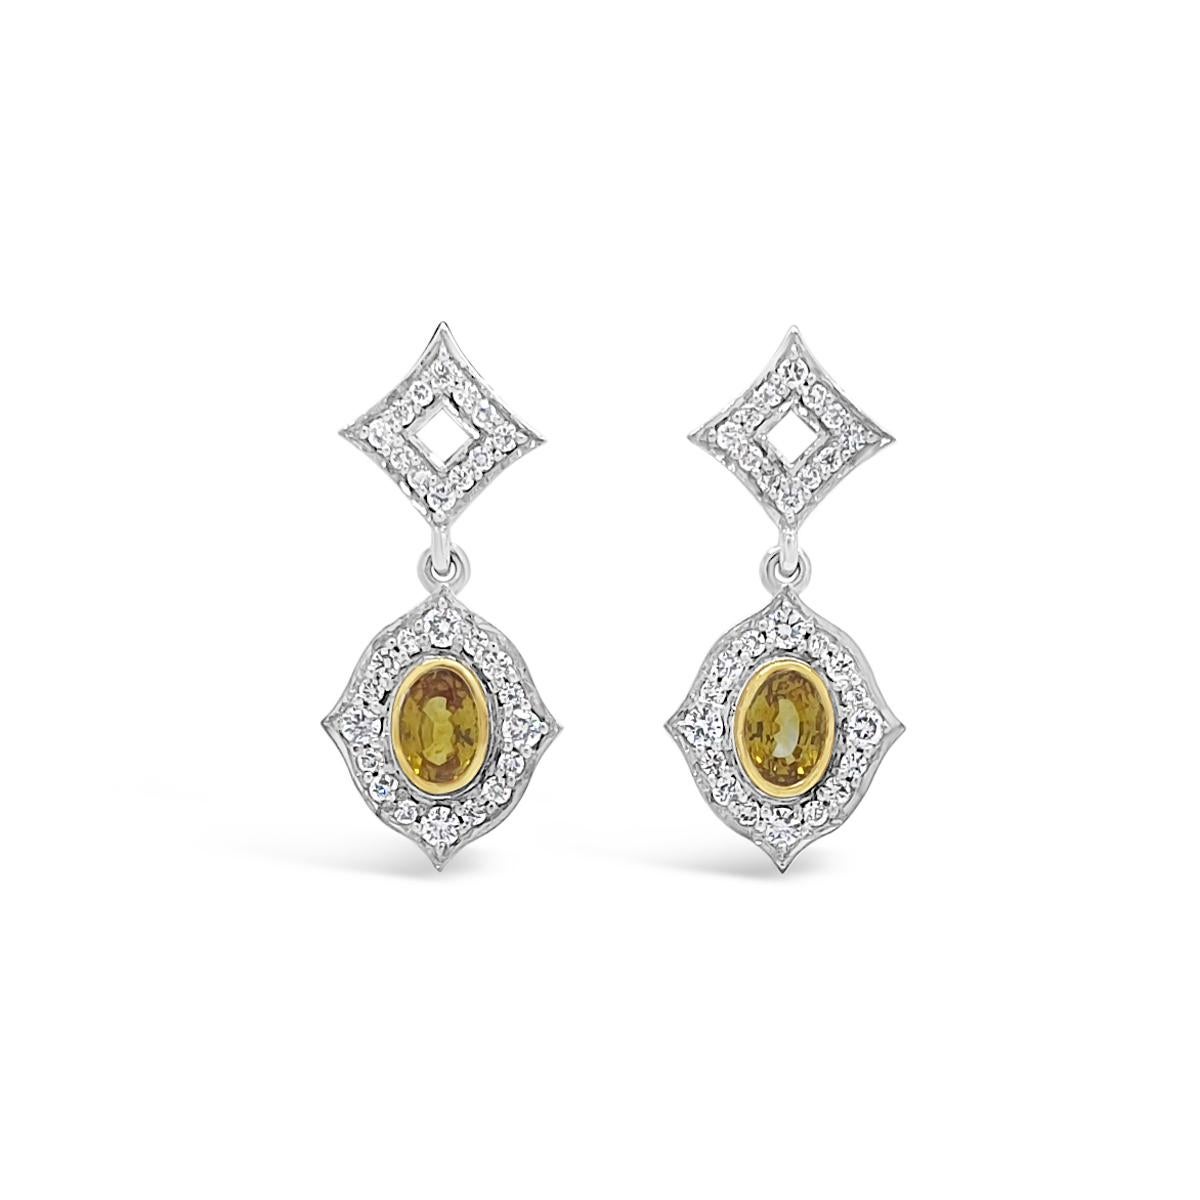 Oval Cut Ceylon Sapphire and Diamond Earrings 